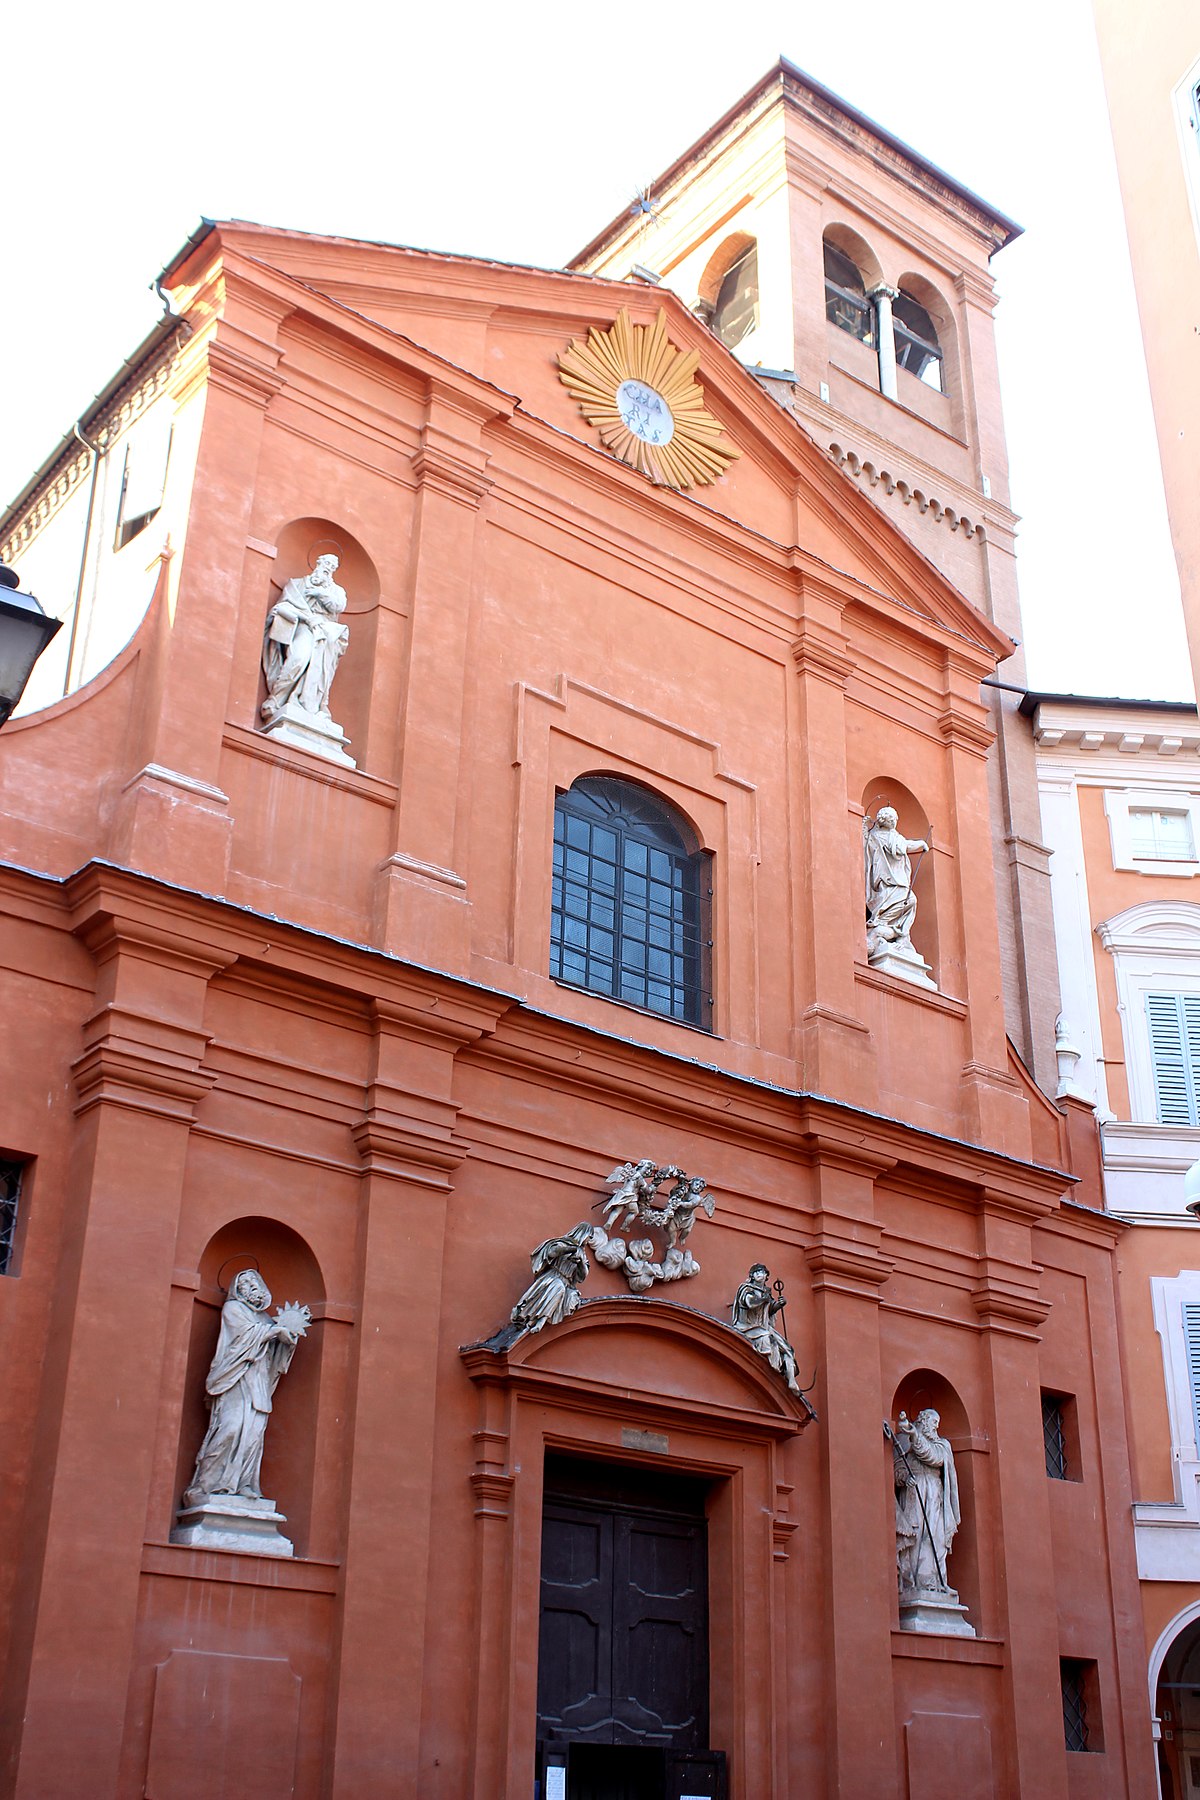 Modena - Wikipedia